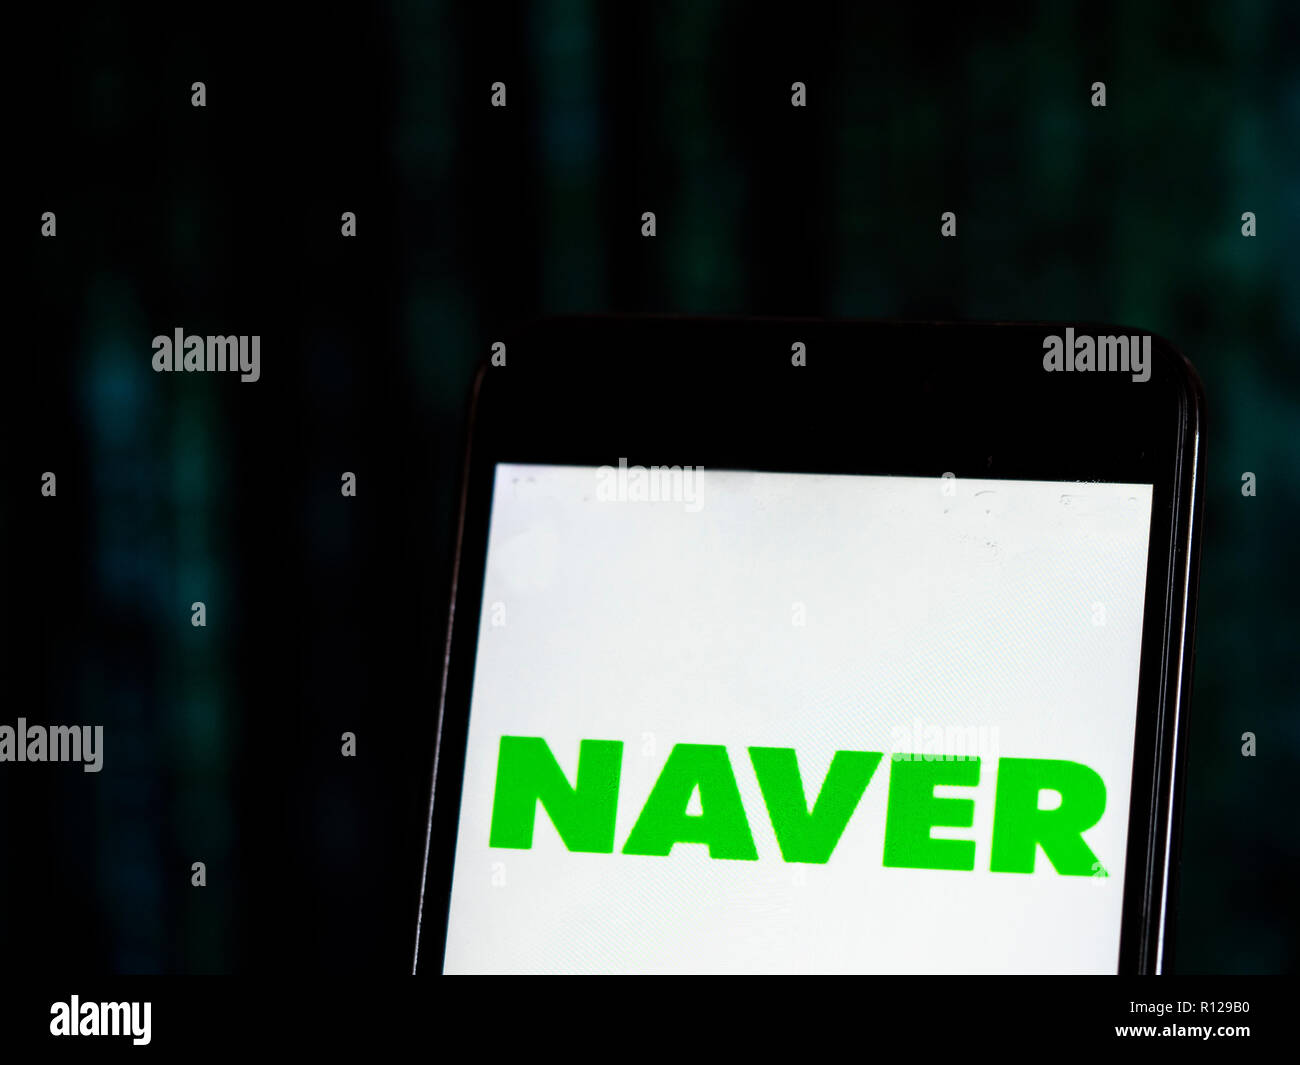 Logo de l'entreprise Internet Naver vu affichée sur téléphone intelligent.  Naver Corporation est une société de services de contenu Internet basée à  Seongnam, Corée du Sud qui exploite le moteur de recherche